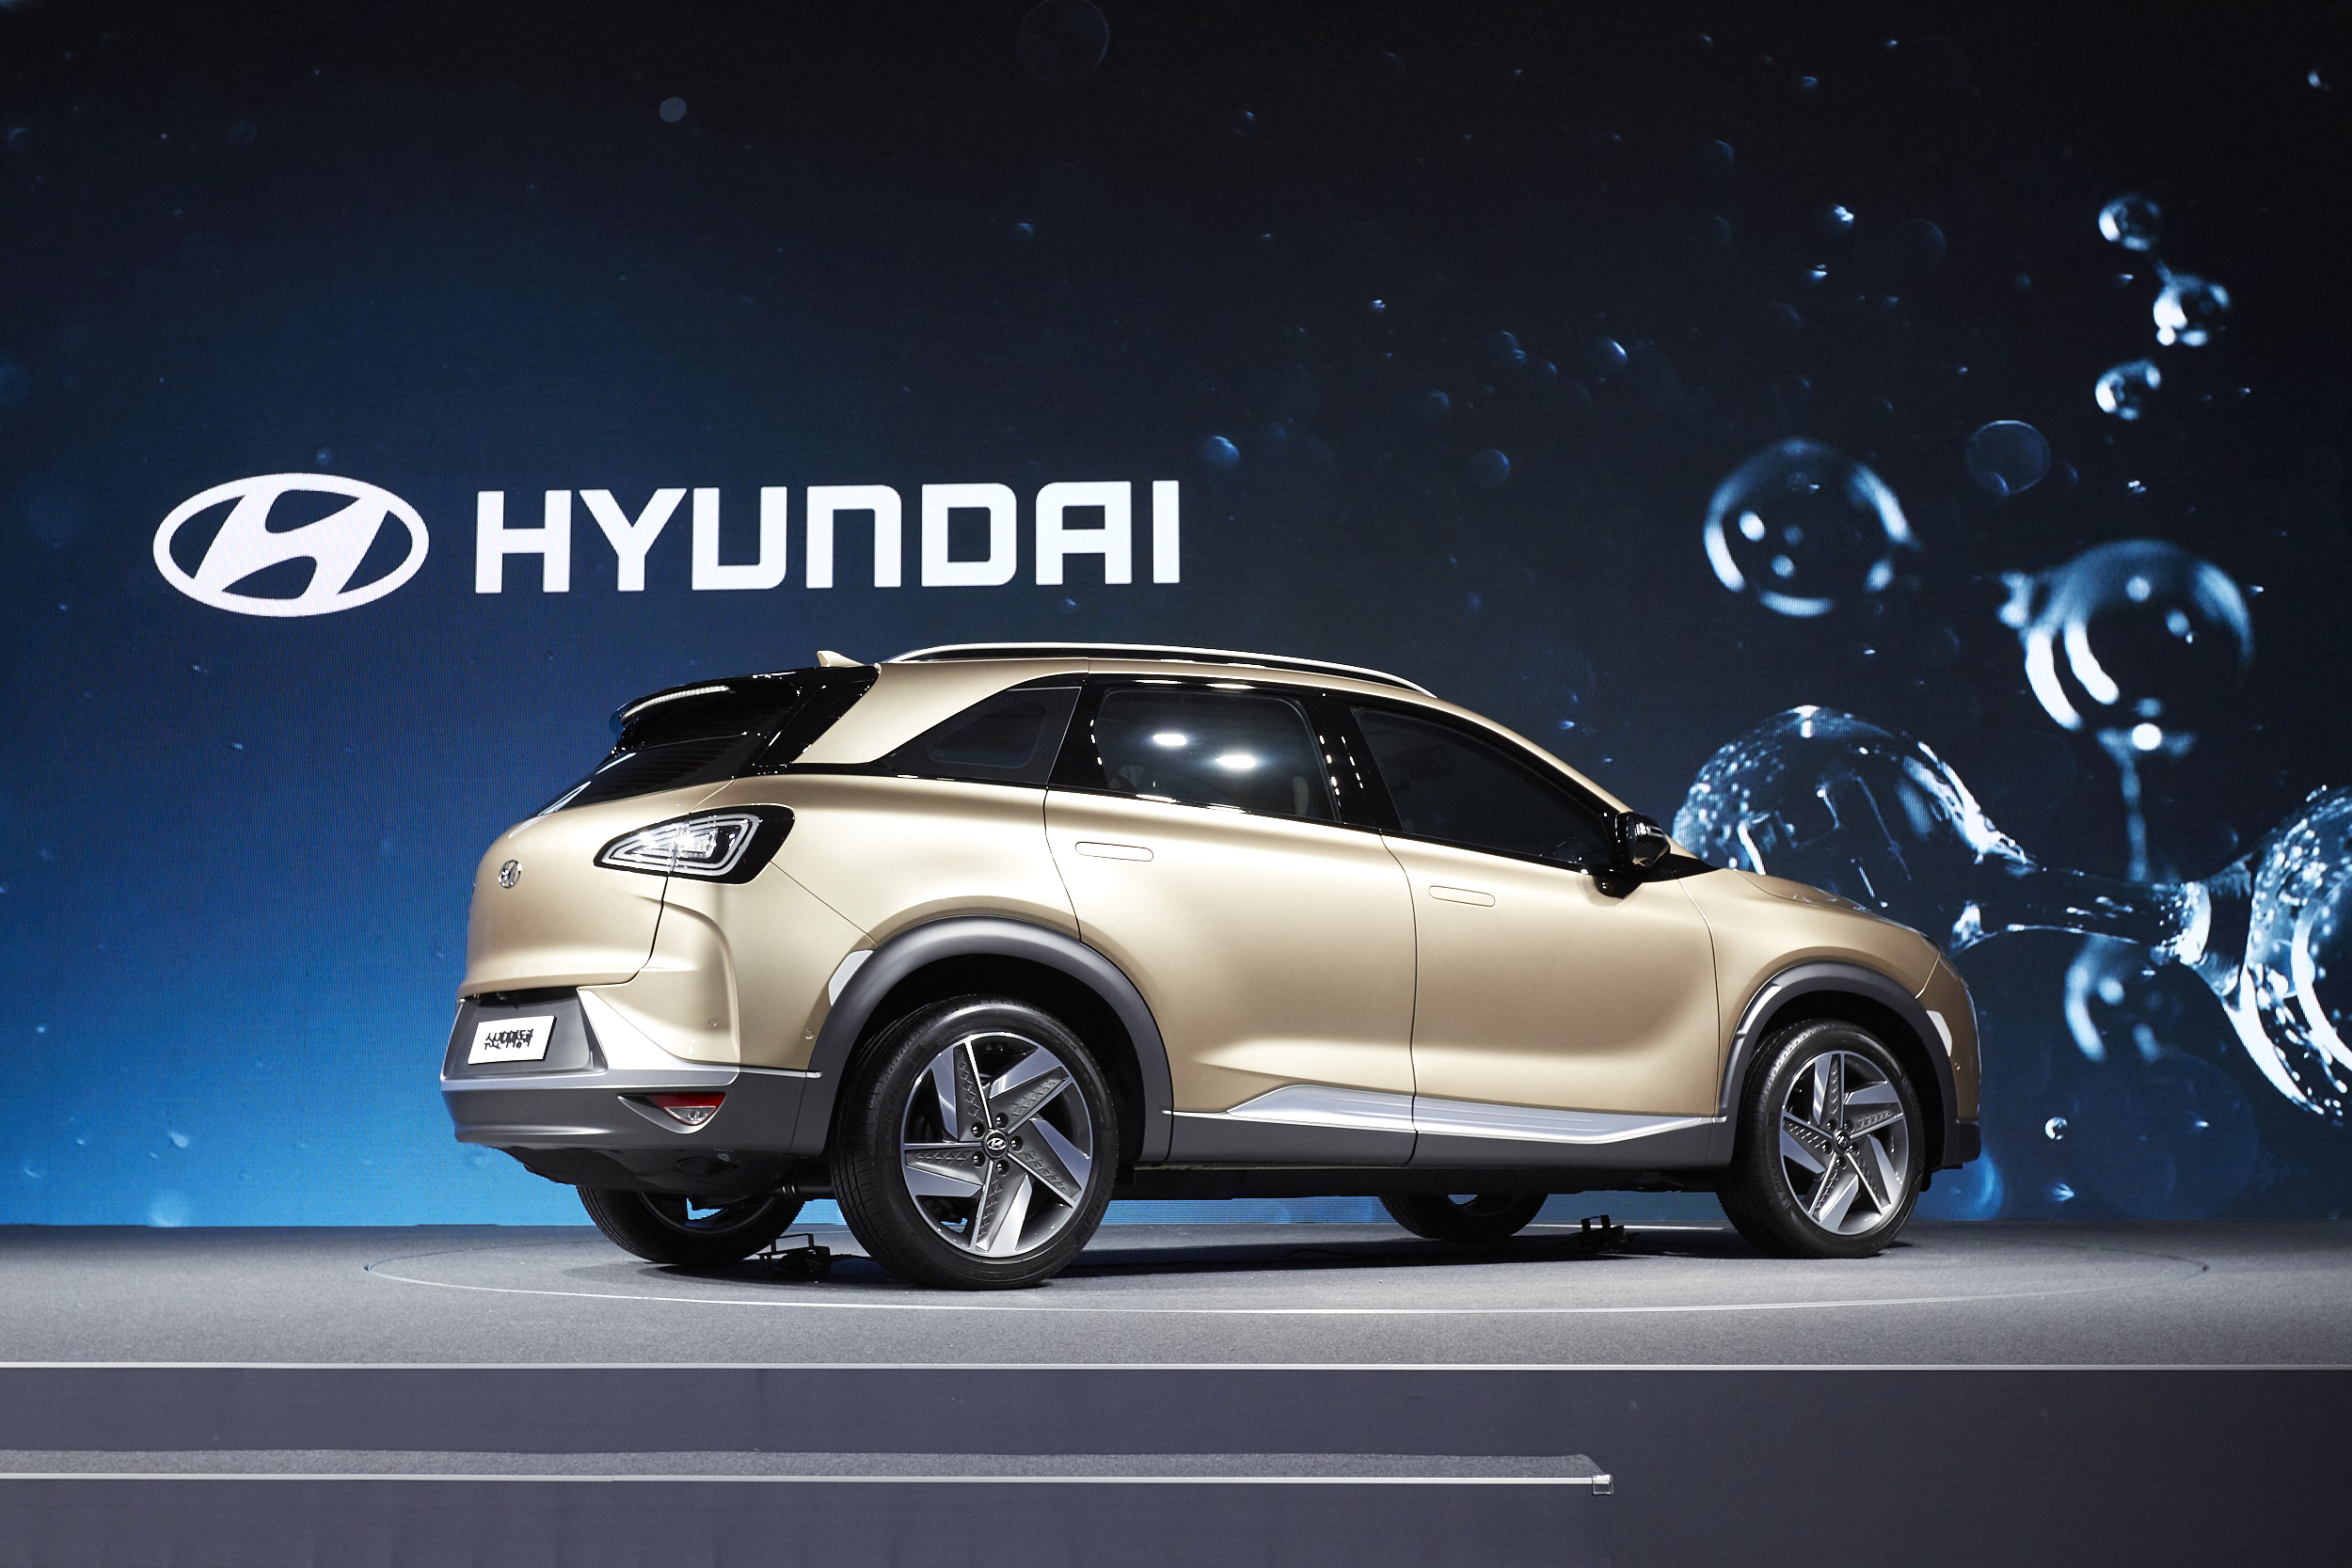 Hyundai perehodit na vodorodnyie avtomobili1